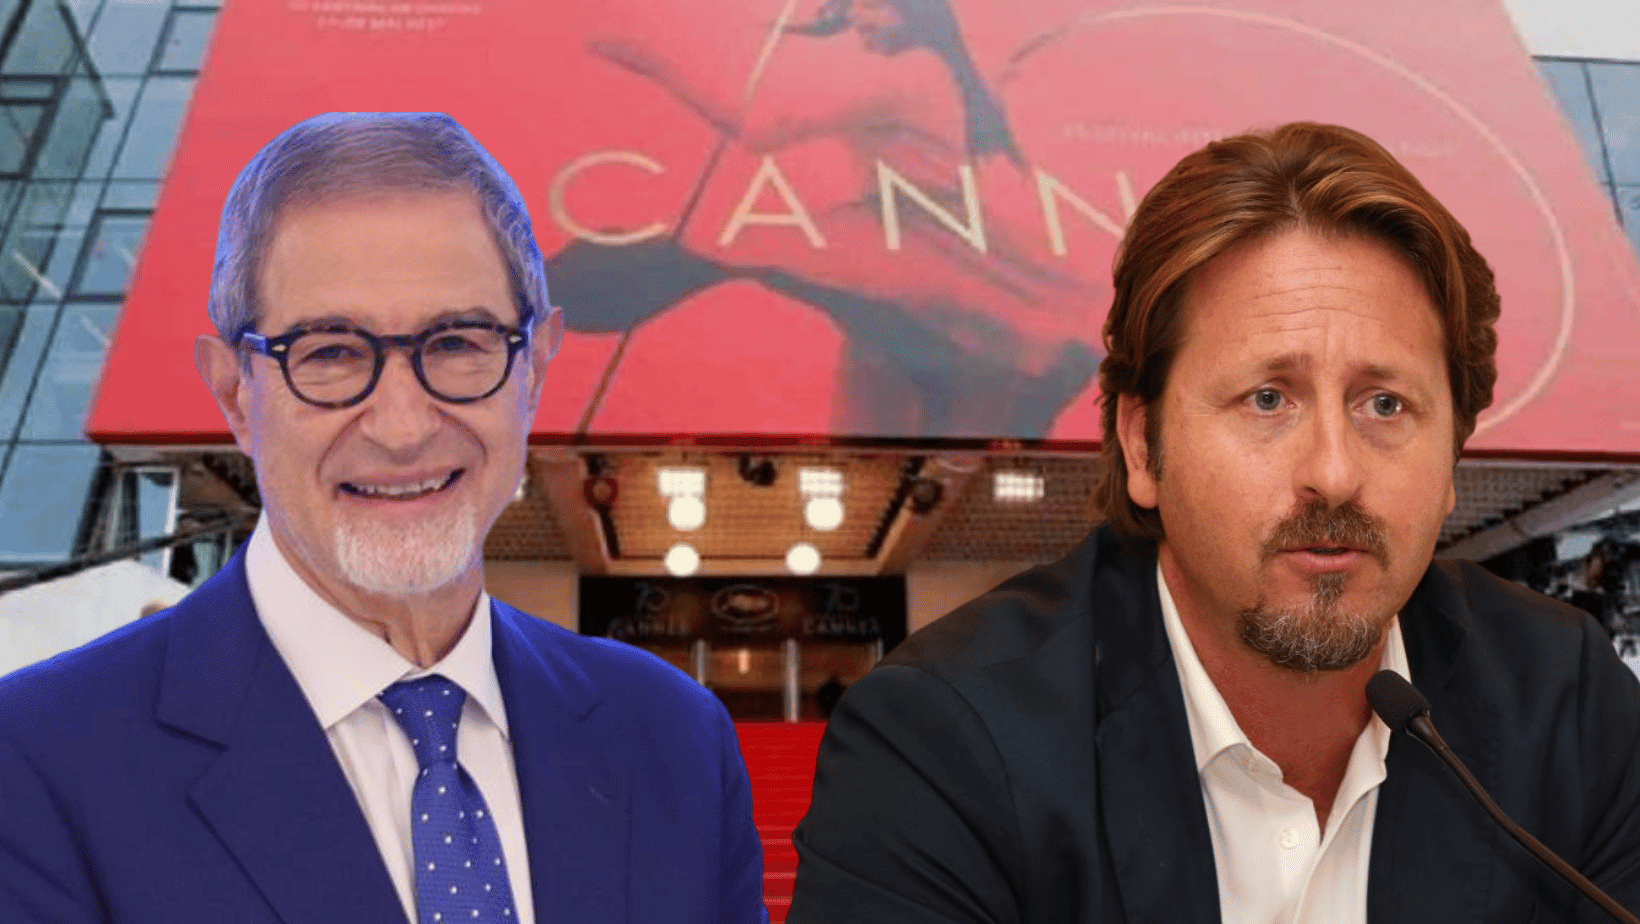 Musumeci difende il suo governo sullo scandalo Cannes: “Fiducia nell’operato di Manlio Messina”